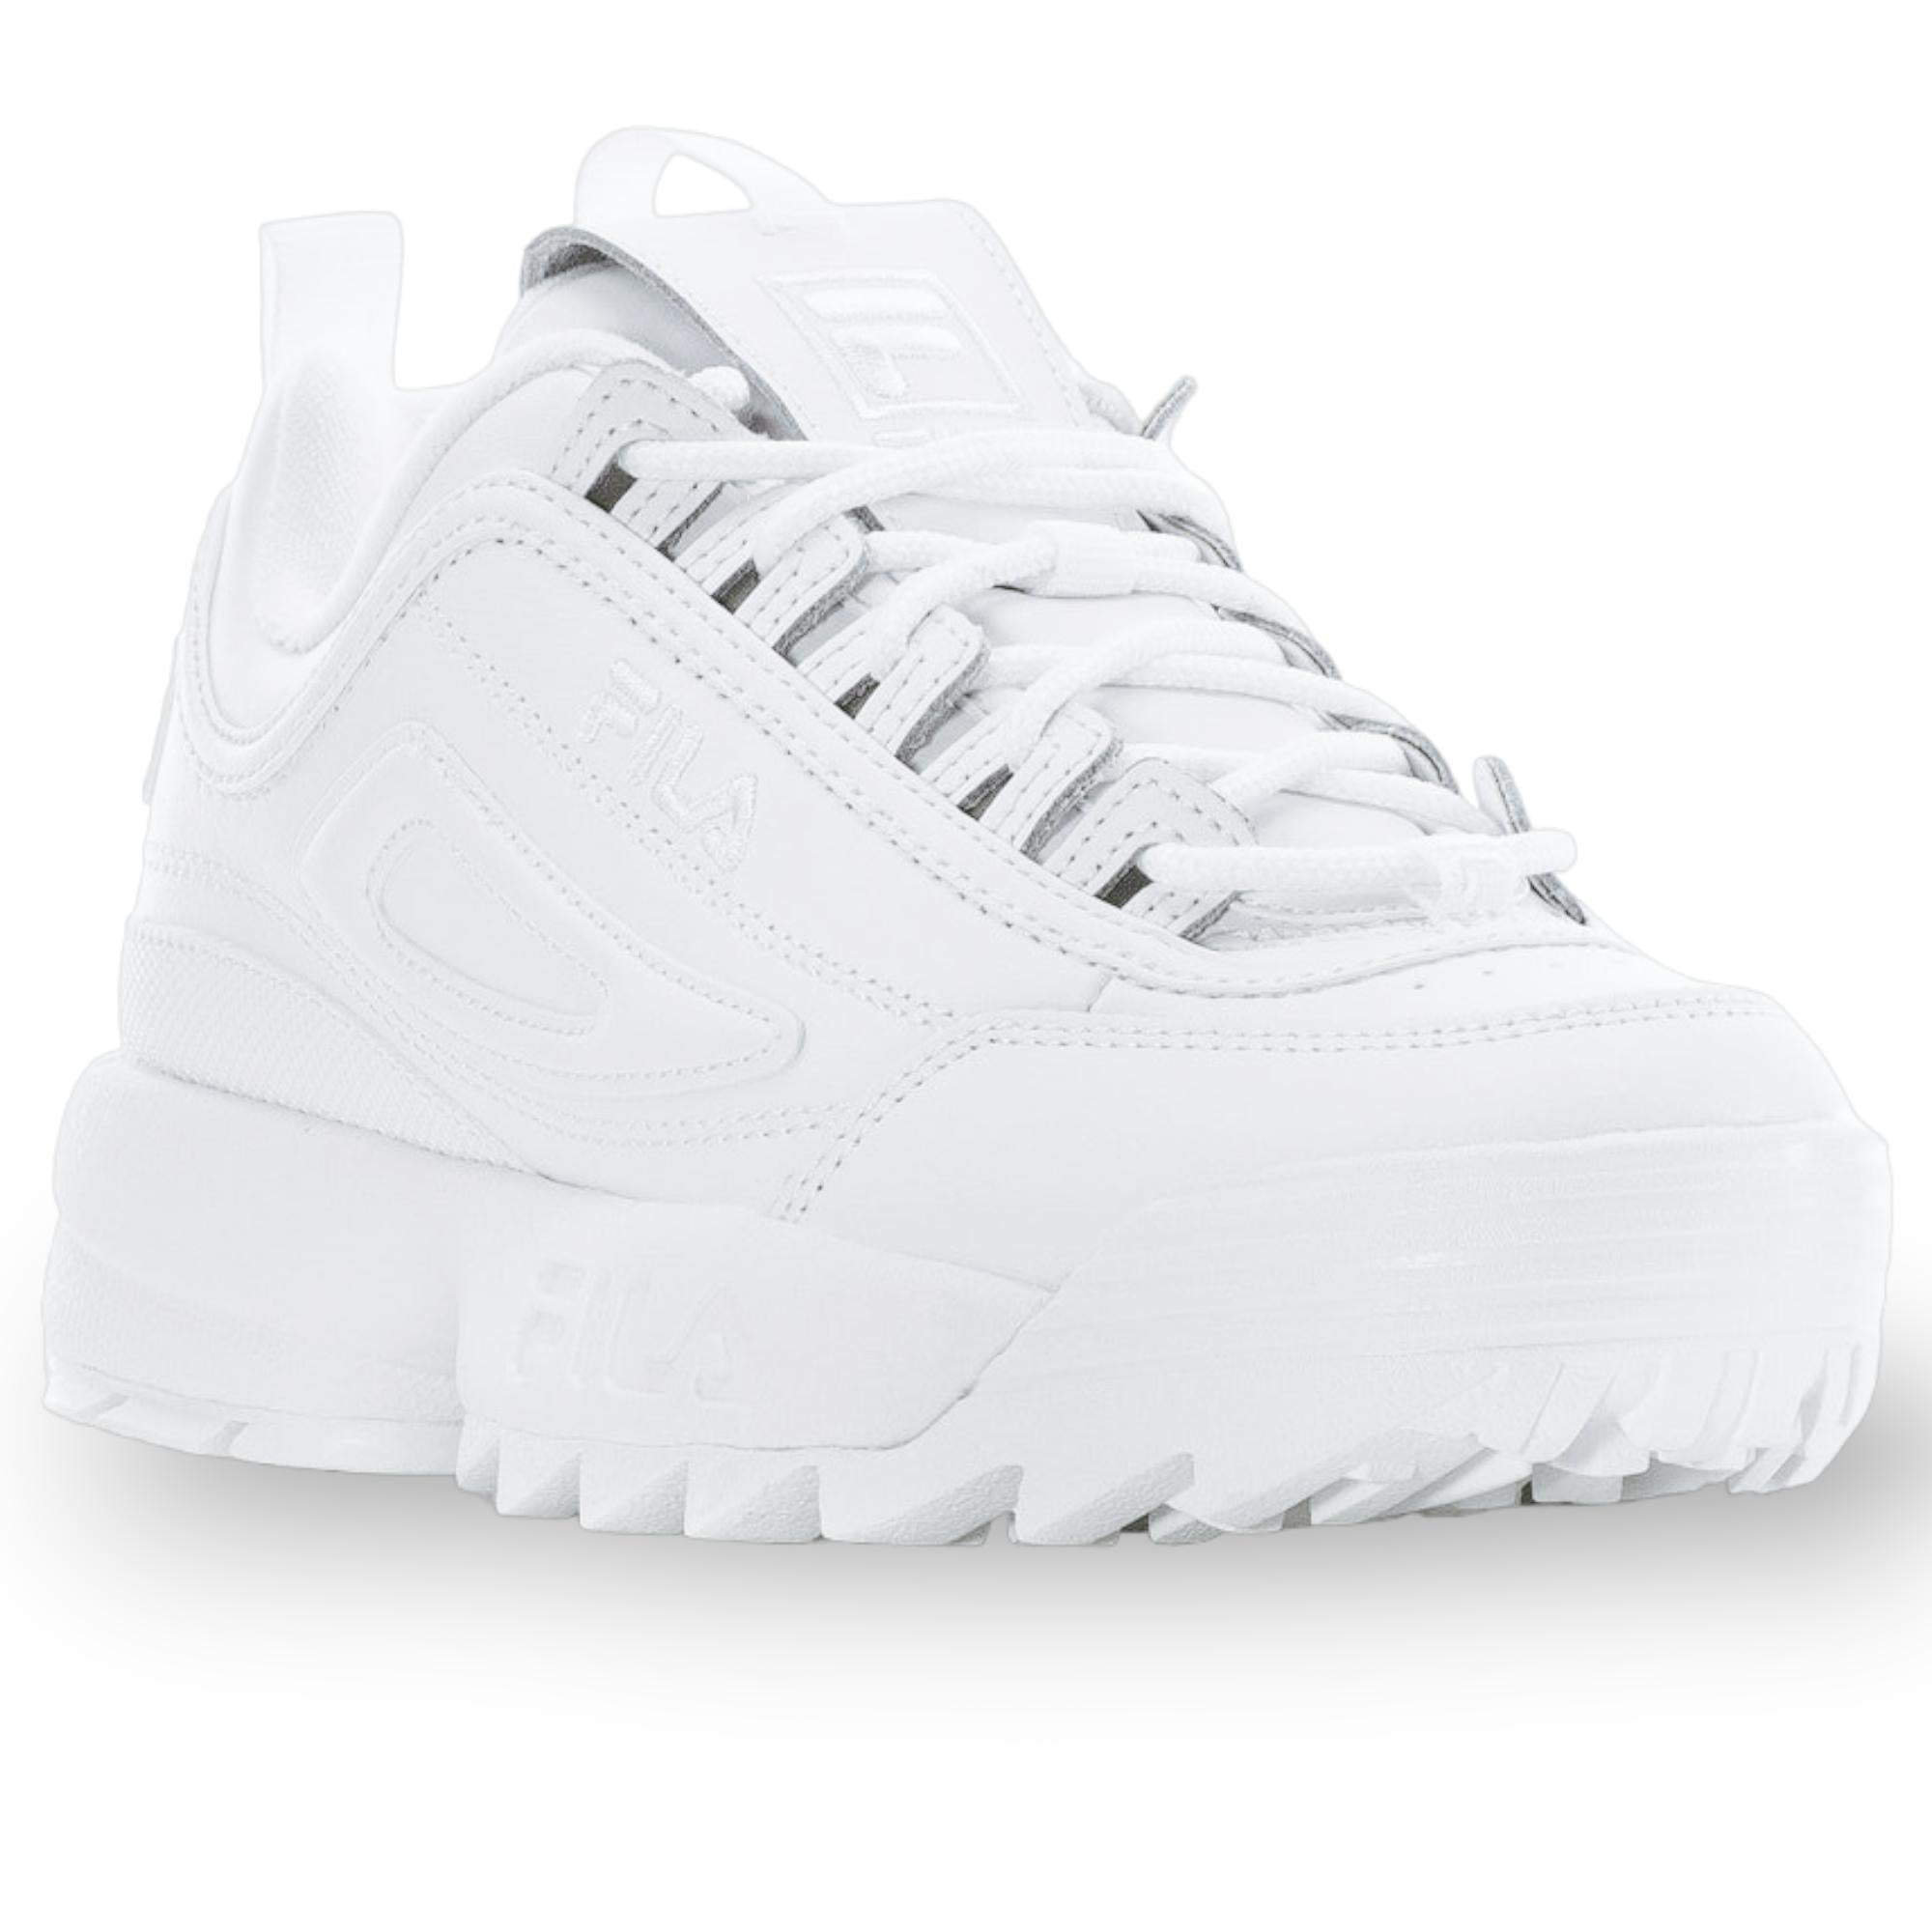 Fila Women's Disruptor 2 II Sneaker All White 6